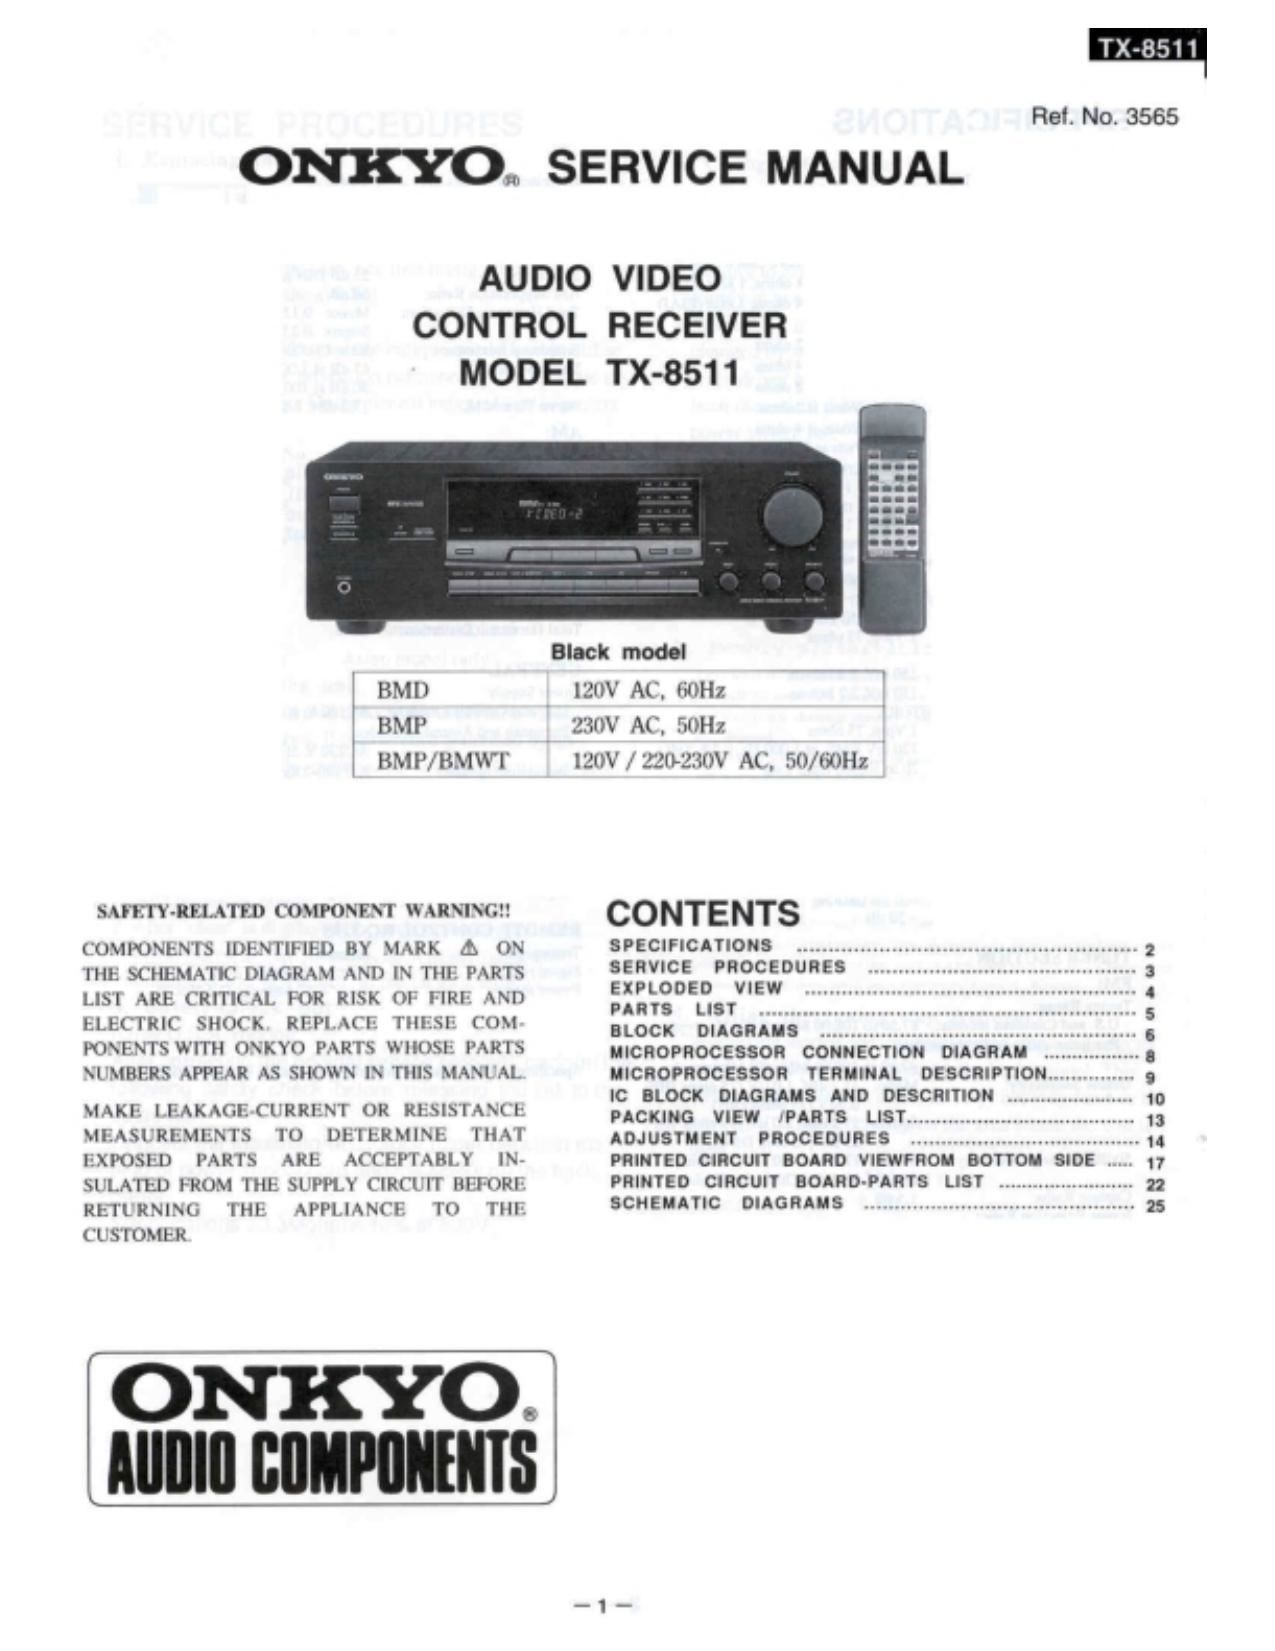 Onkyo TX 8511 Service Manual